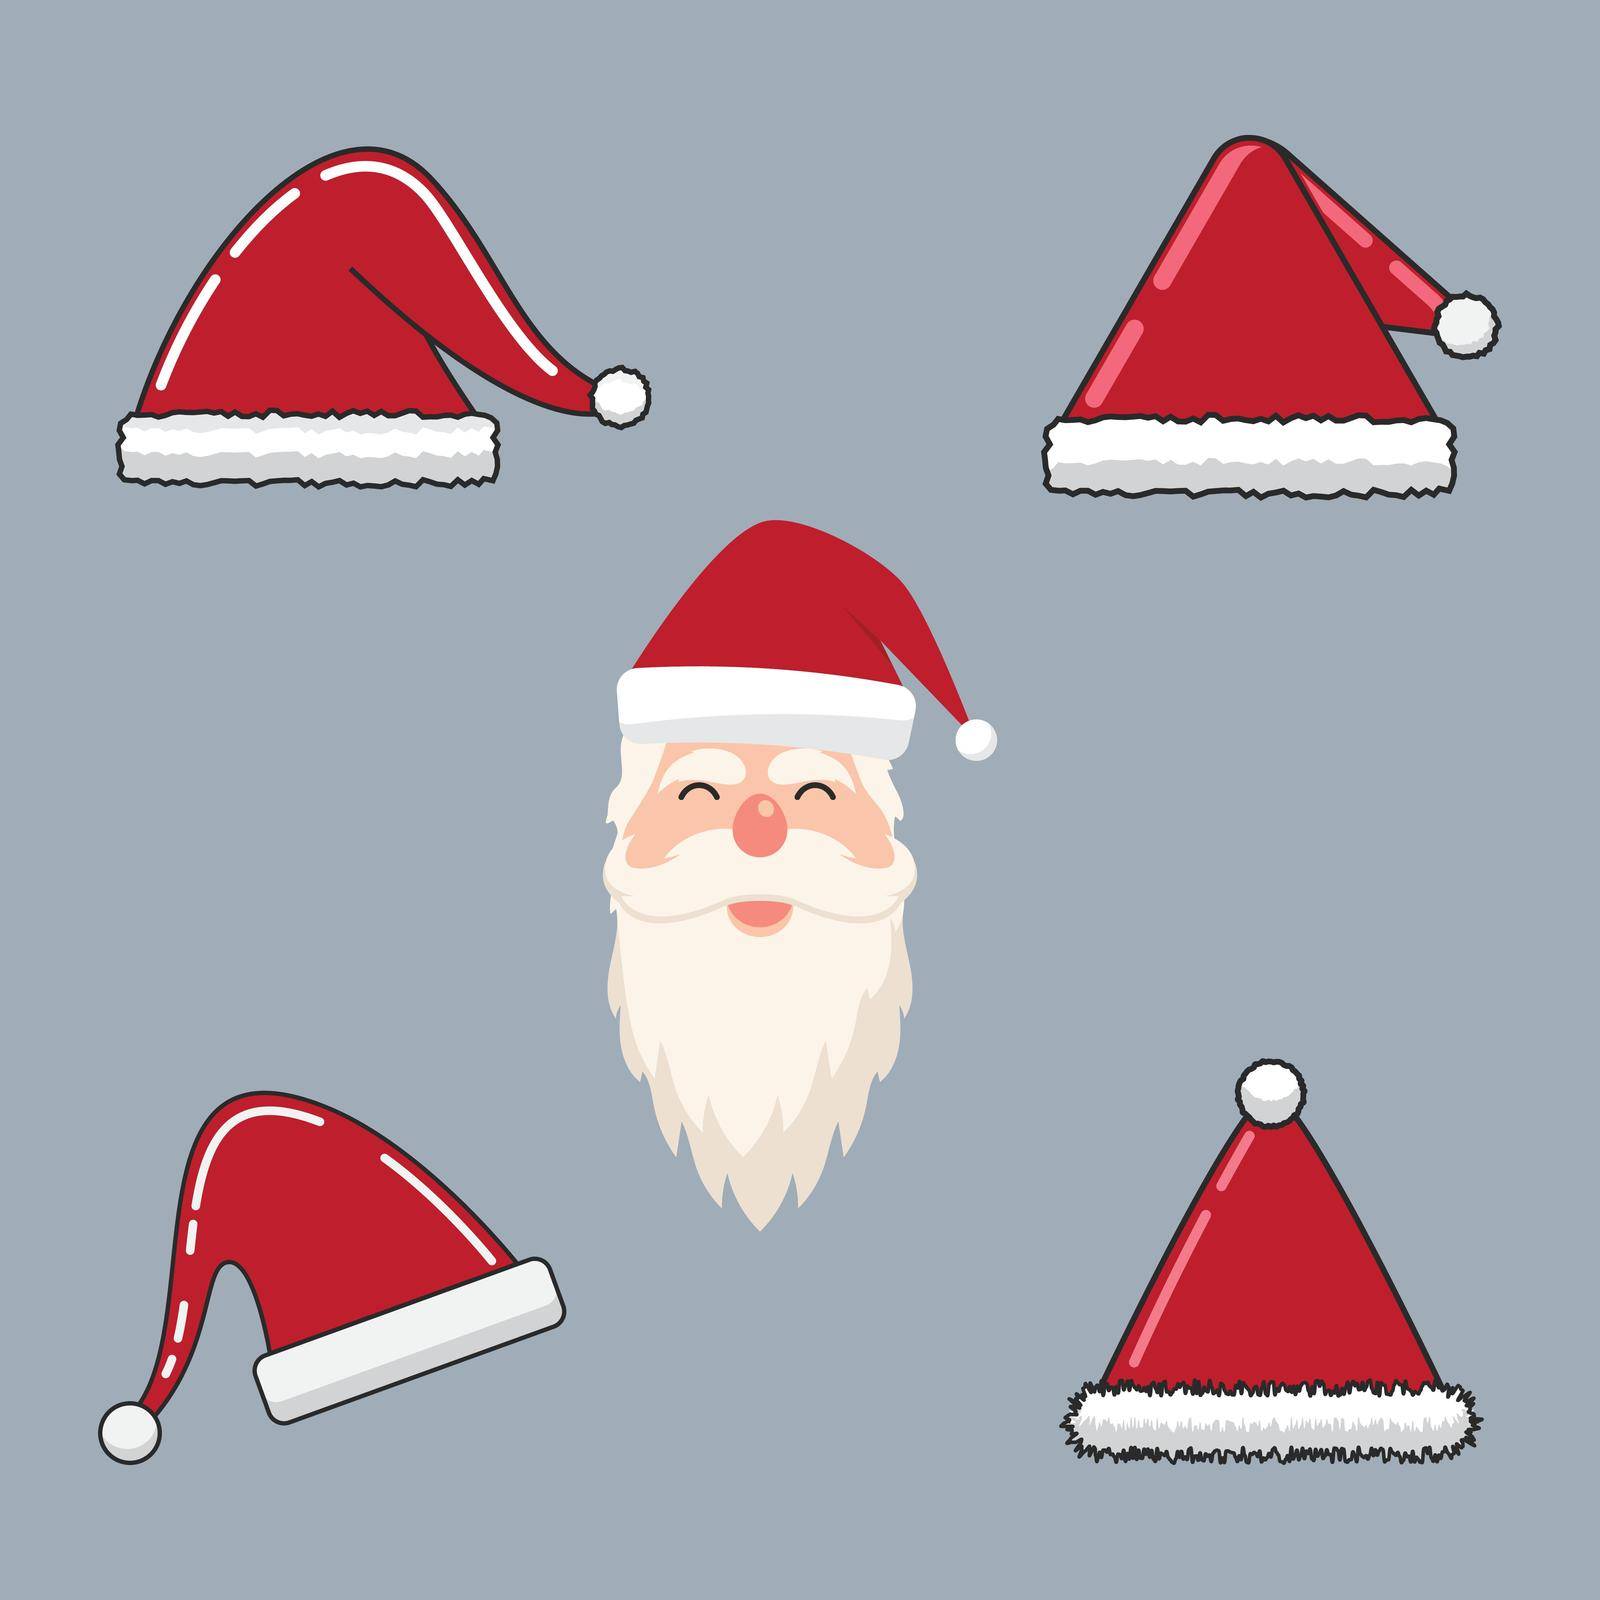 Santa claus and santa hat illustration by awk